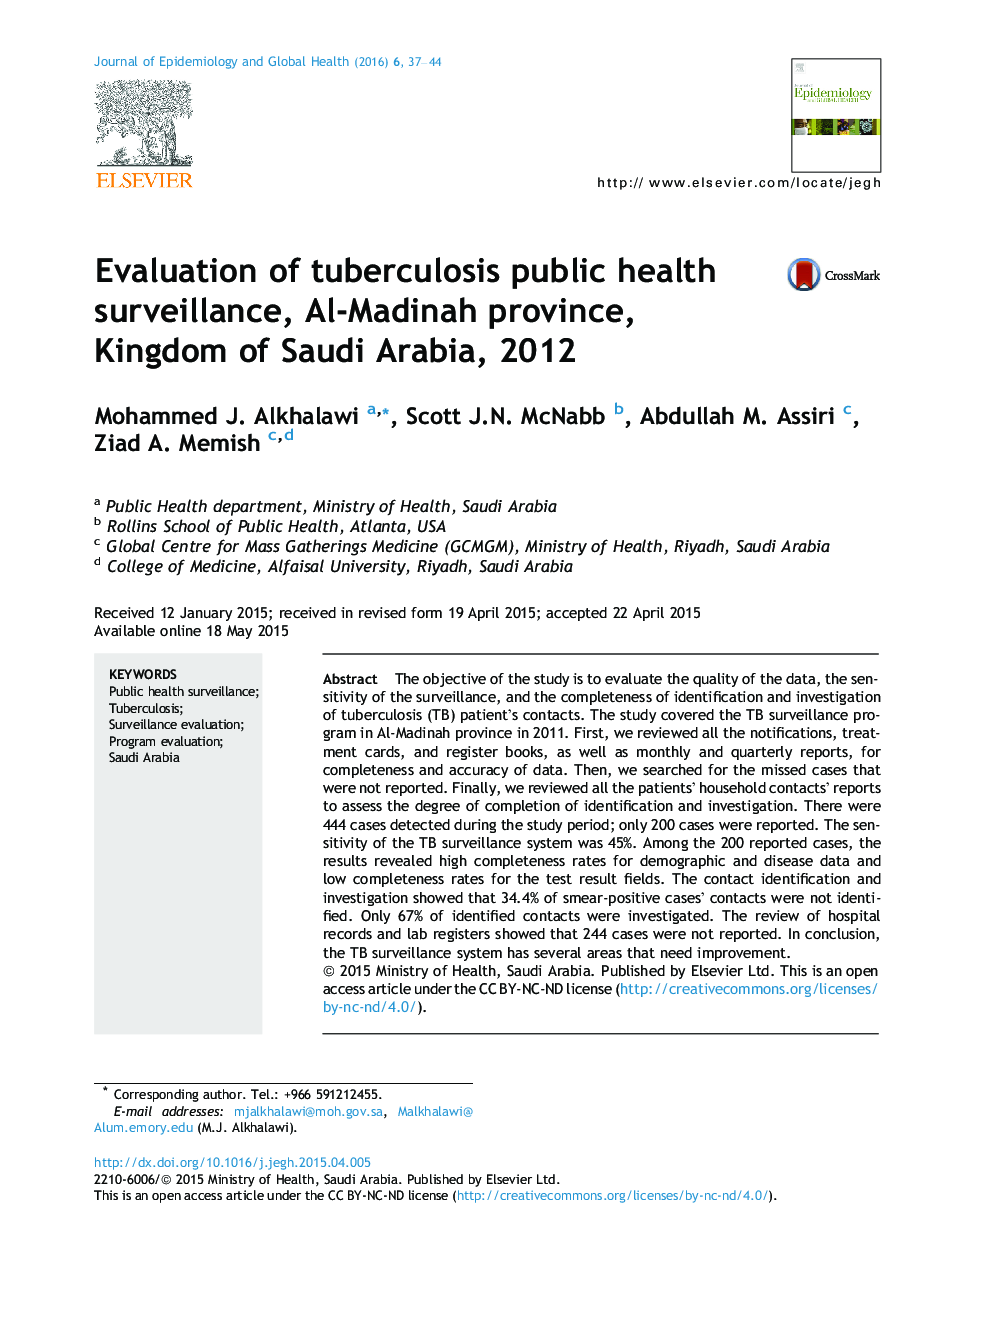 بررسی نظارت بهداشت عمومی بر بیماری سل، استان مدینه، عربستان سعودی، 2012